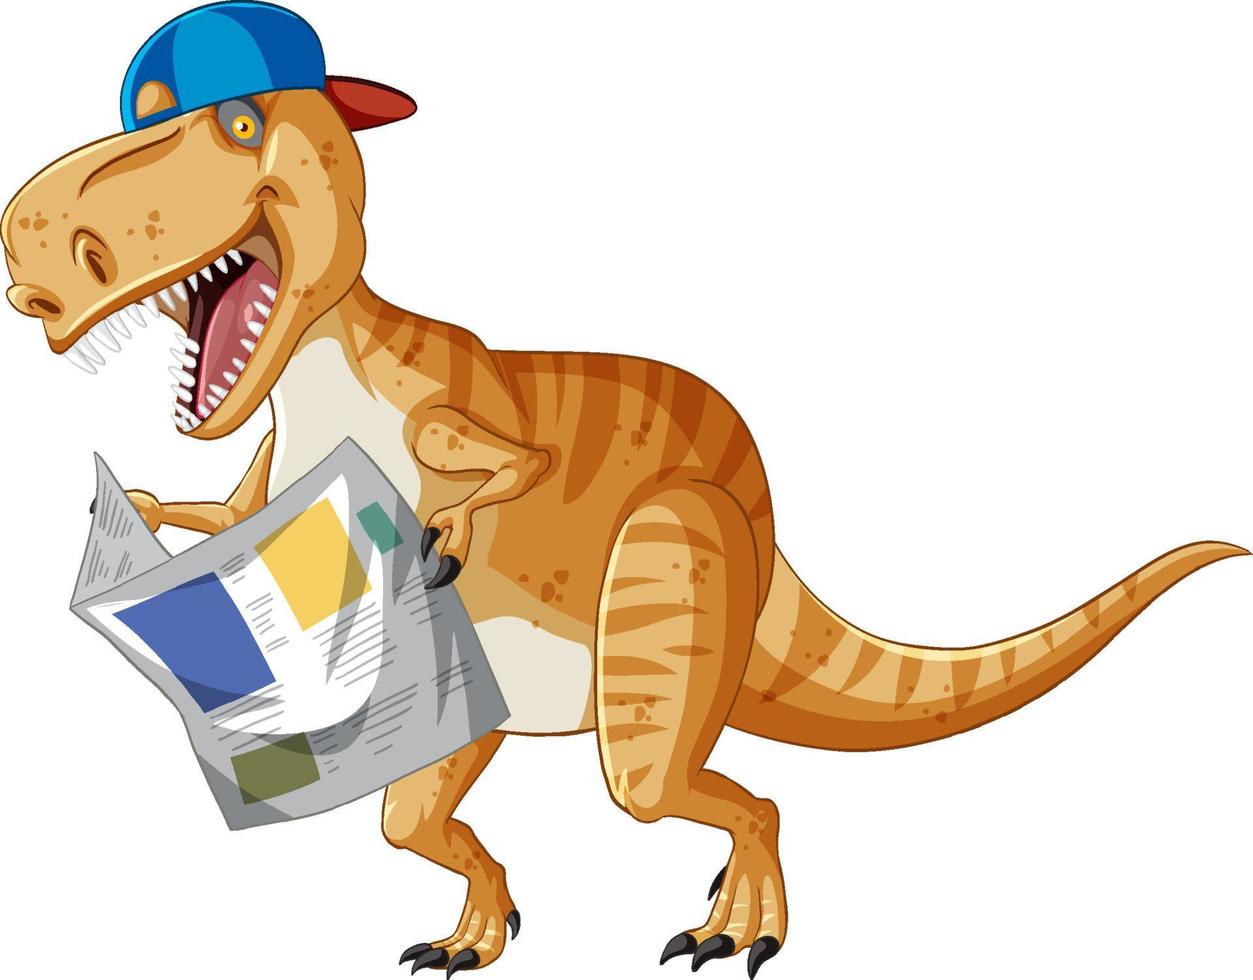 tyrannosaurus rex dinosaurier liest zeitung im cartoon-stil vektor